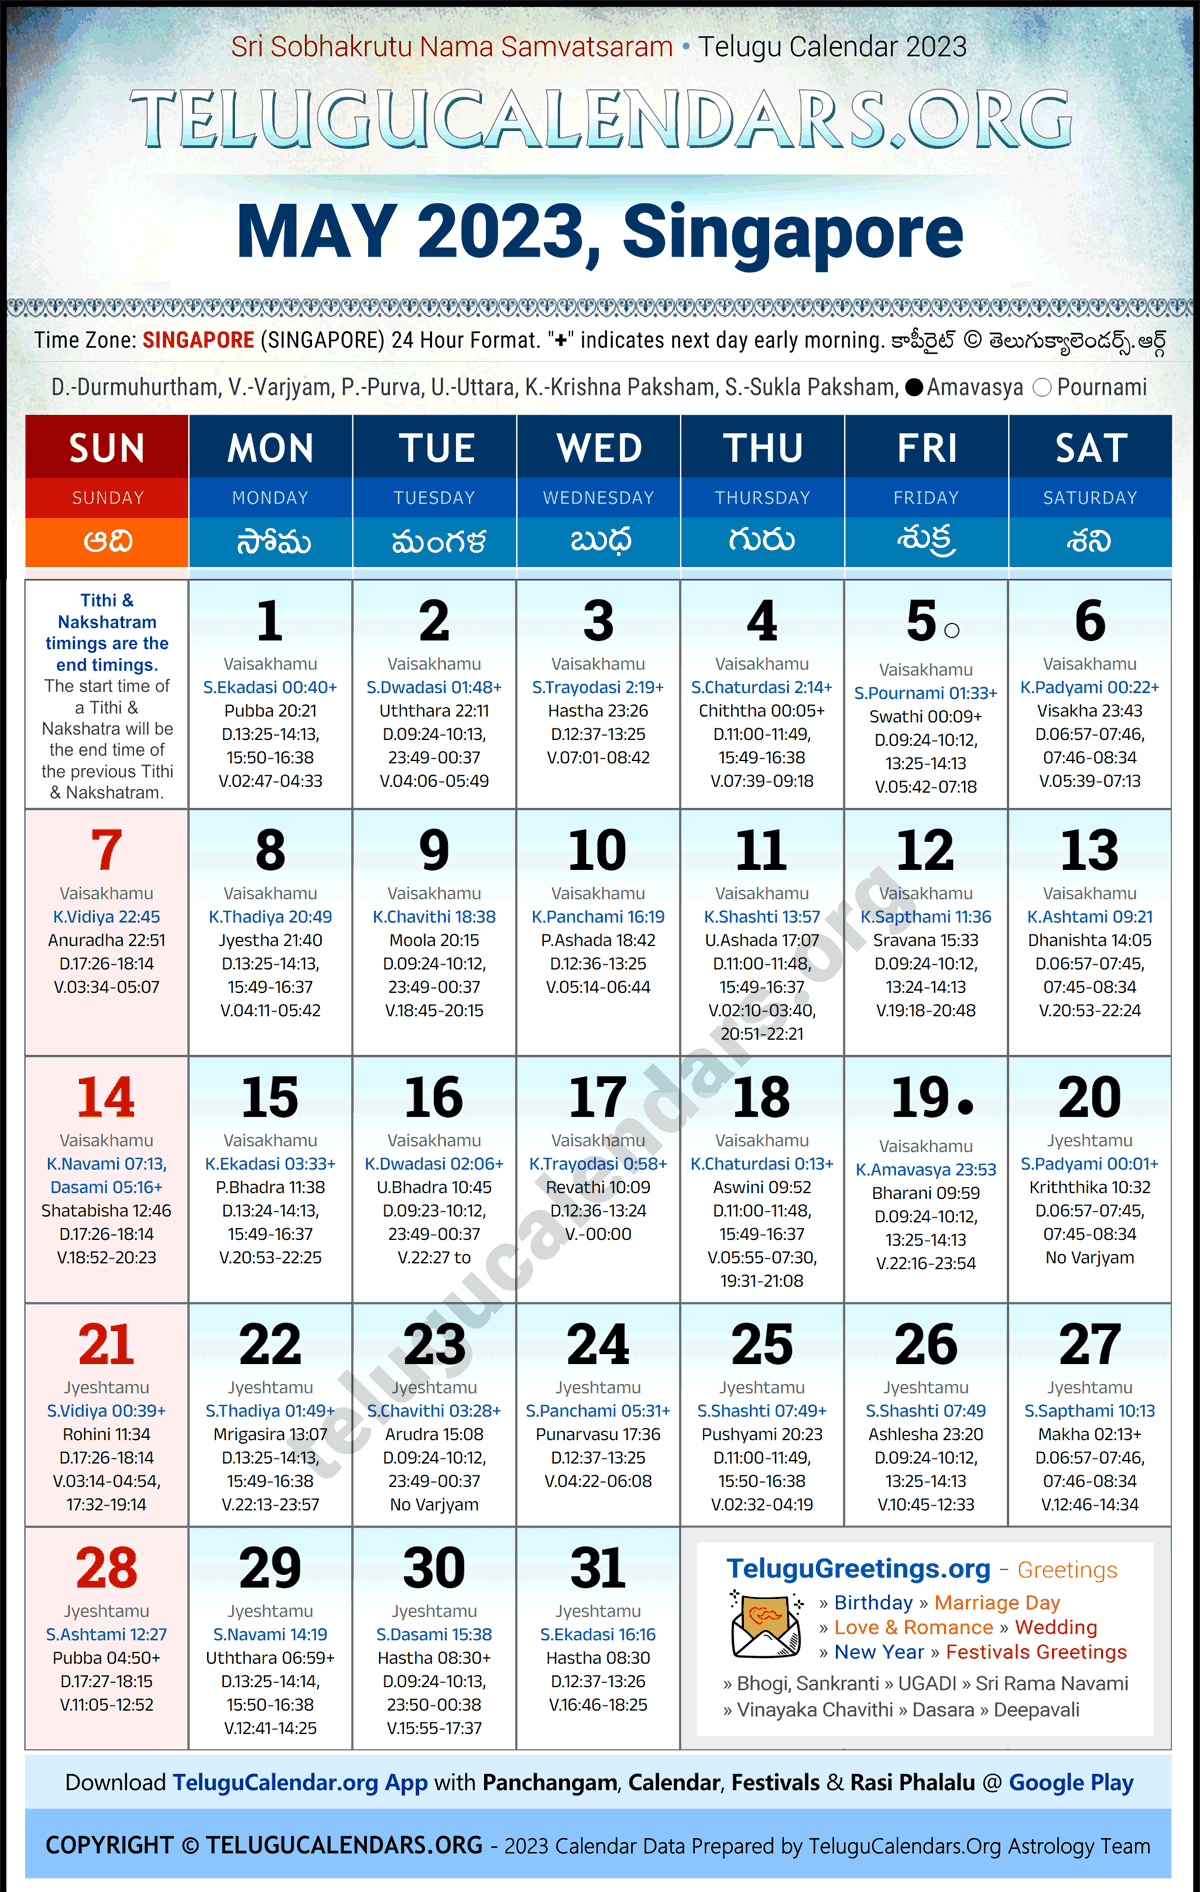 Telugu Calendar 2023 May Festivals for Singapore